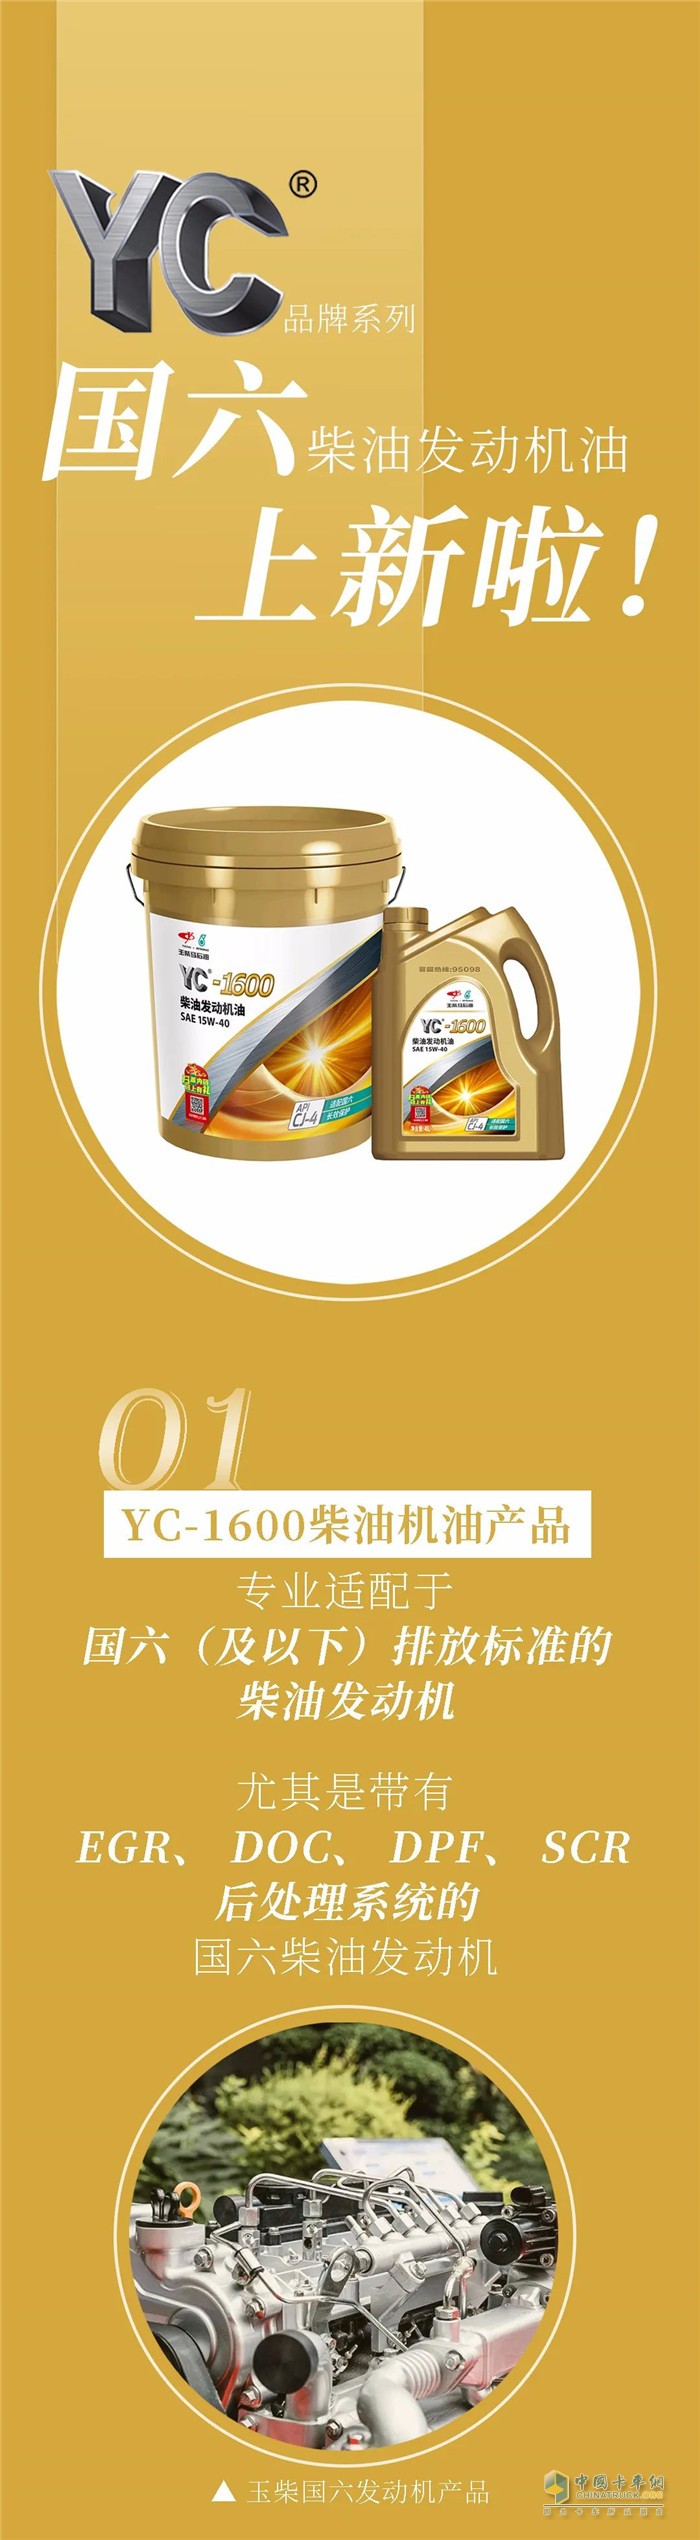 玉柴YC-1600国六柴油发动机油品上新